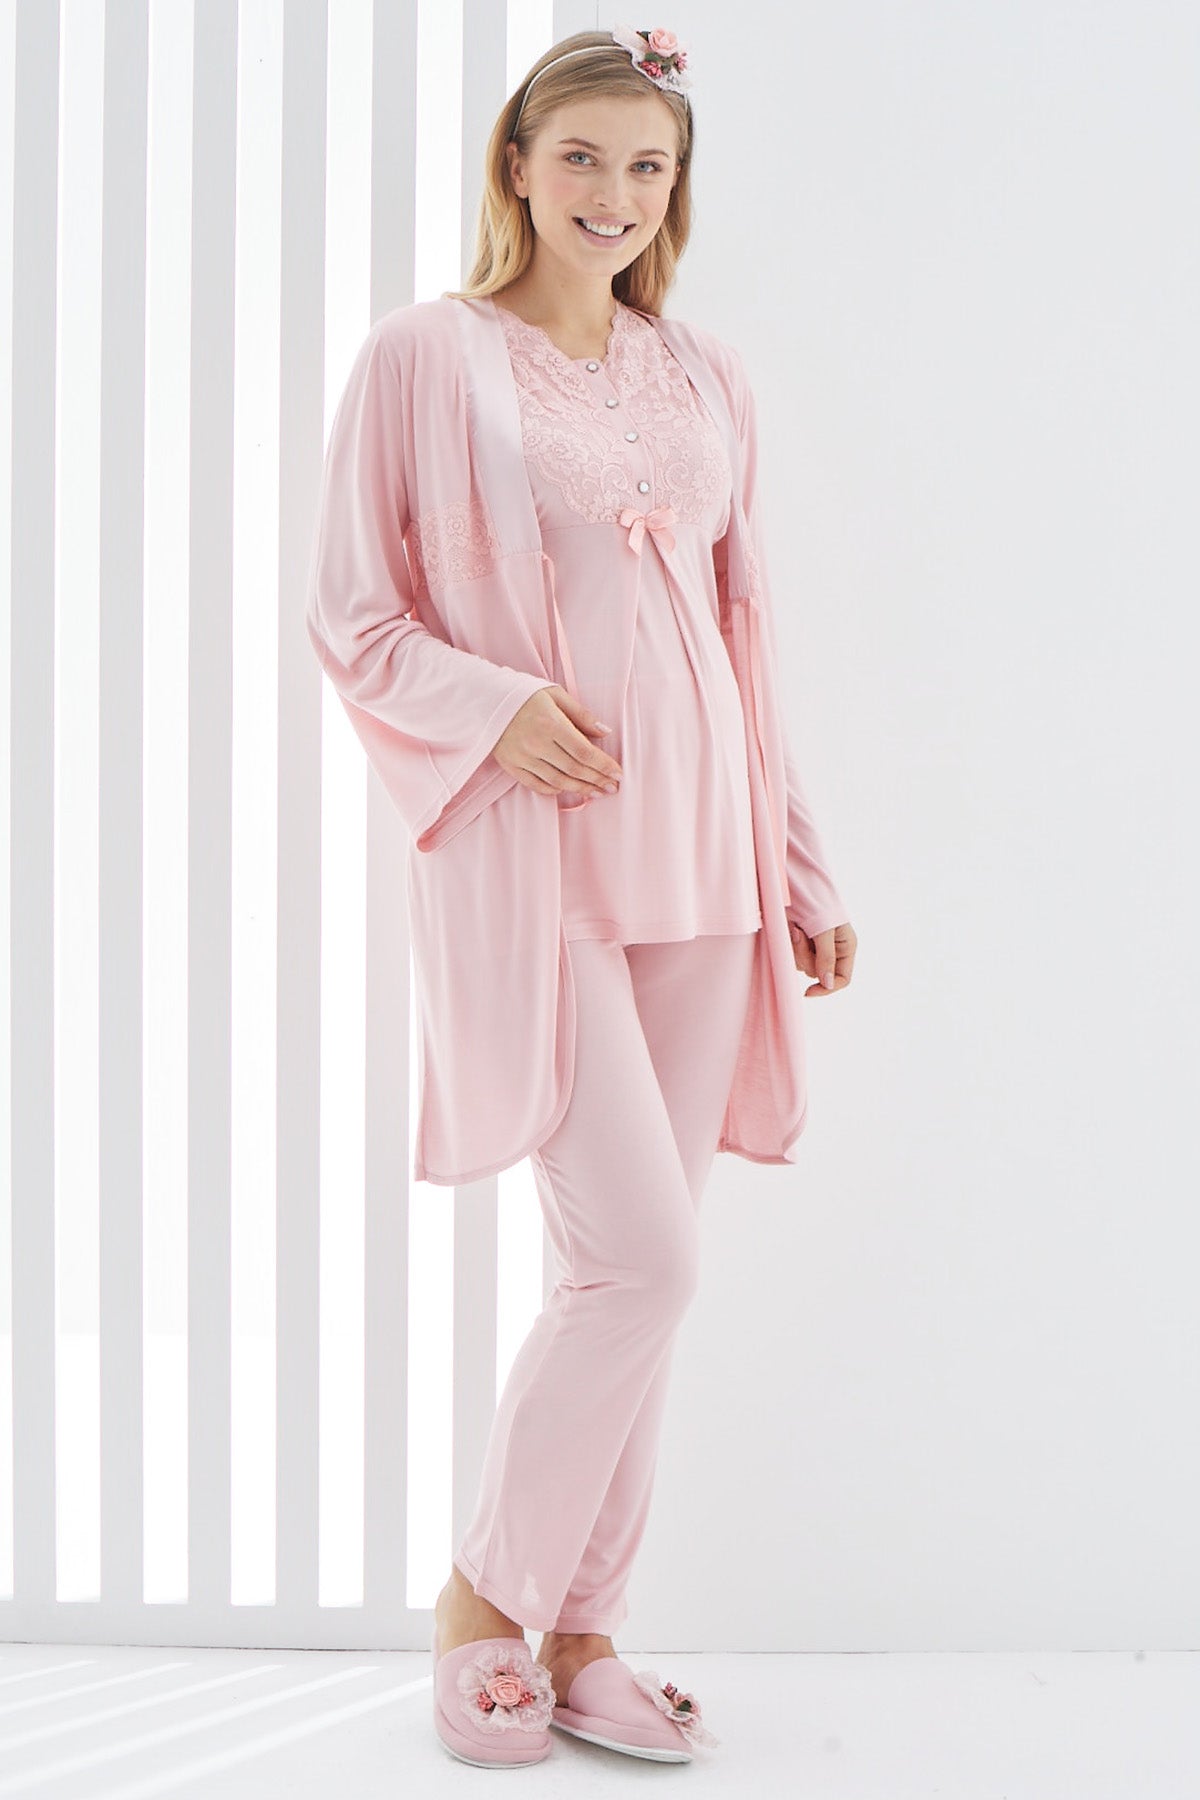 Lace Collar 3-Pieces Maternity & Nursing Pajamas With Robe Powder - 3410